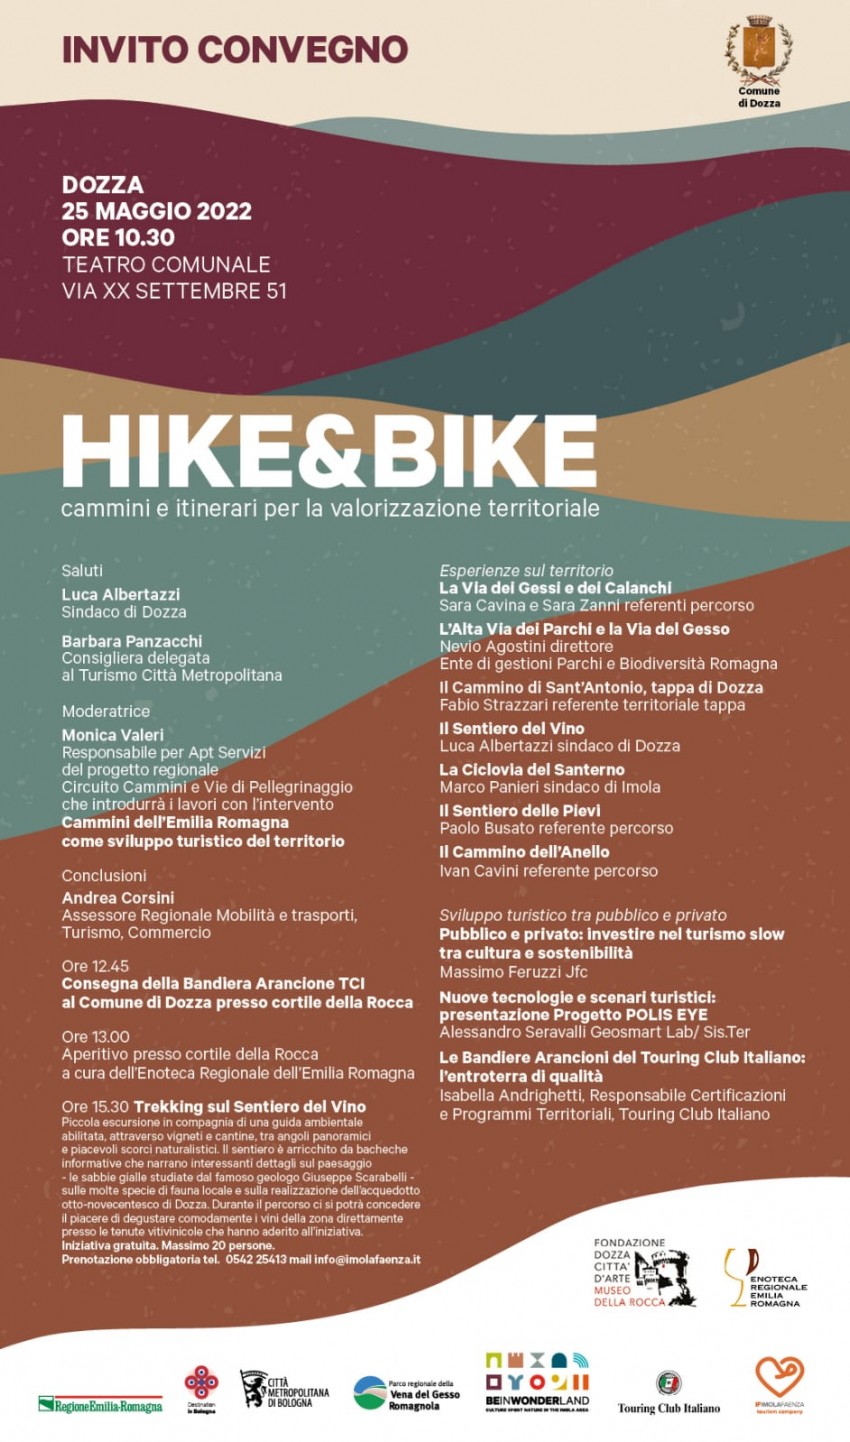 HIKE&BIKE - cammini e itinerari per la valorizzazione territoriale